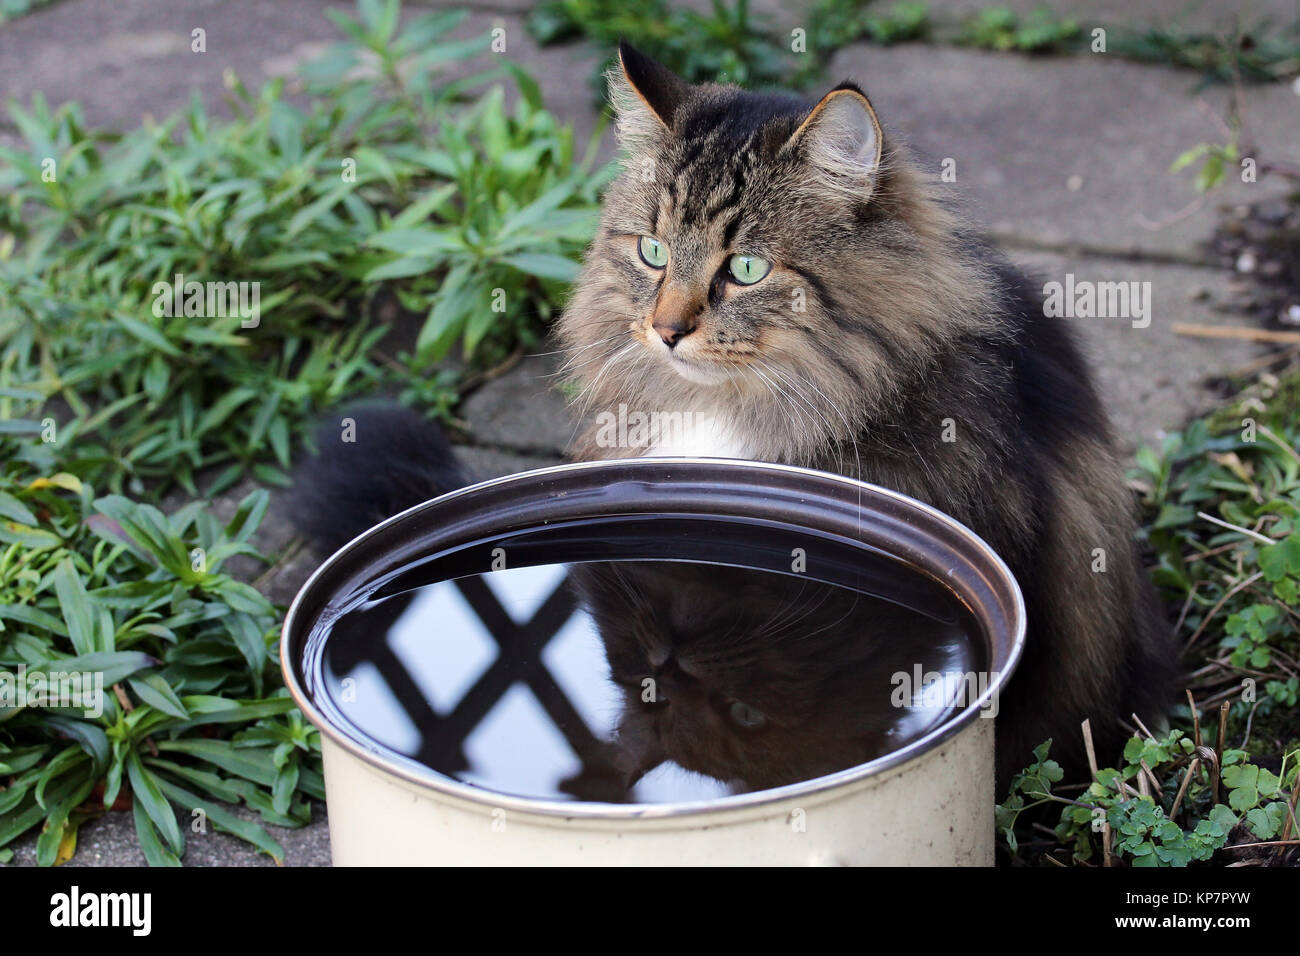 Les chats aiment boire l'eau de pluie. un chat est assis devant un bol d'eau  de pluie Photo Stock - Alamy